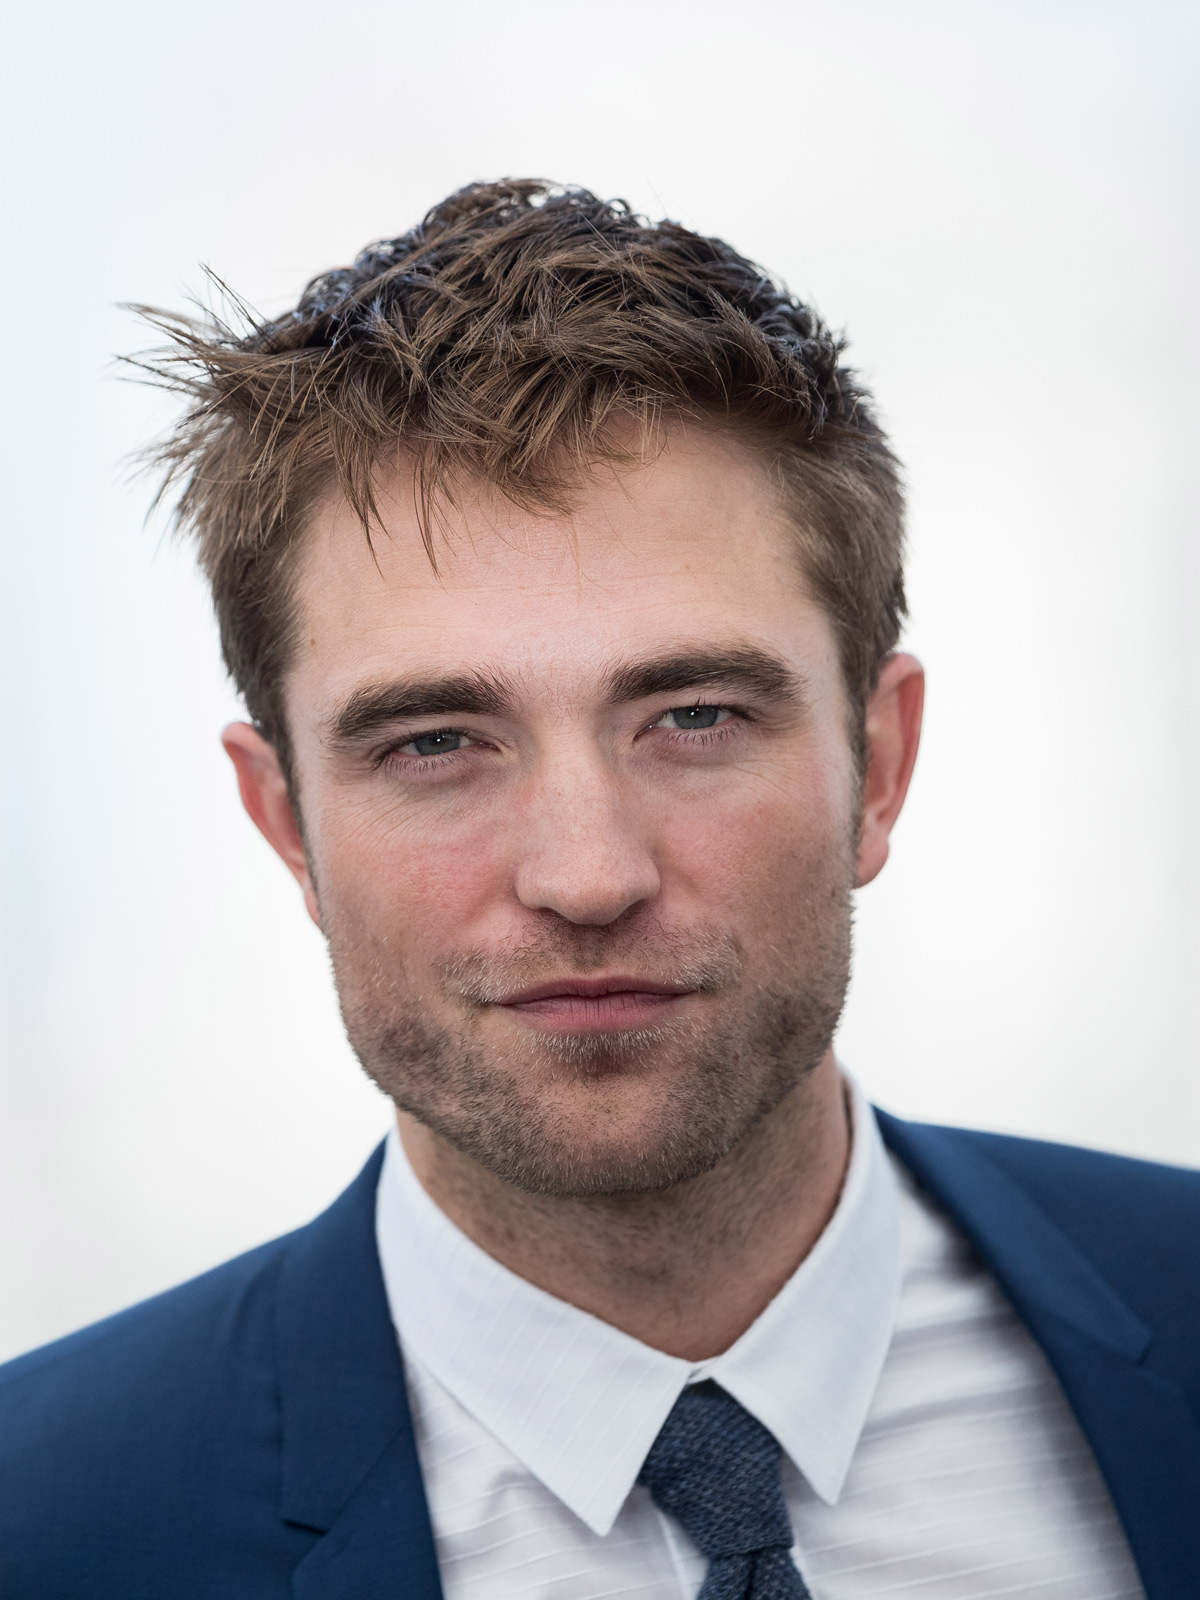 Fotos de Robert Pattinson - SensaCine.com